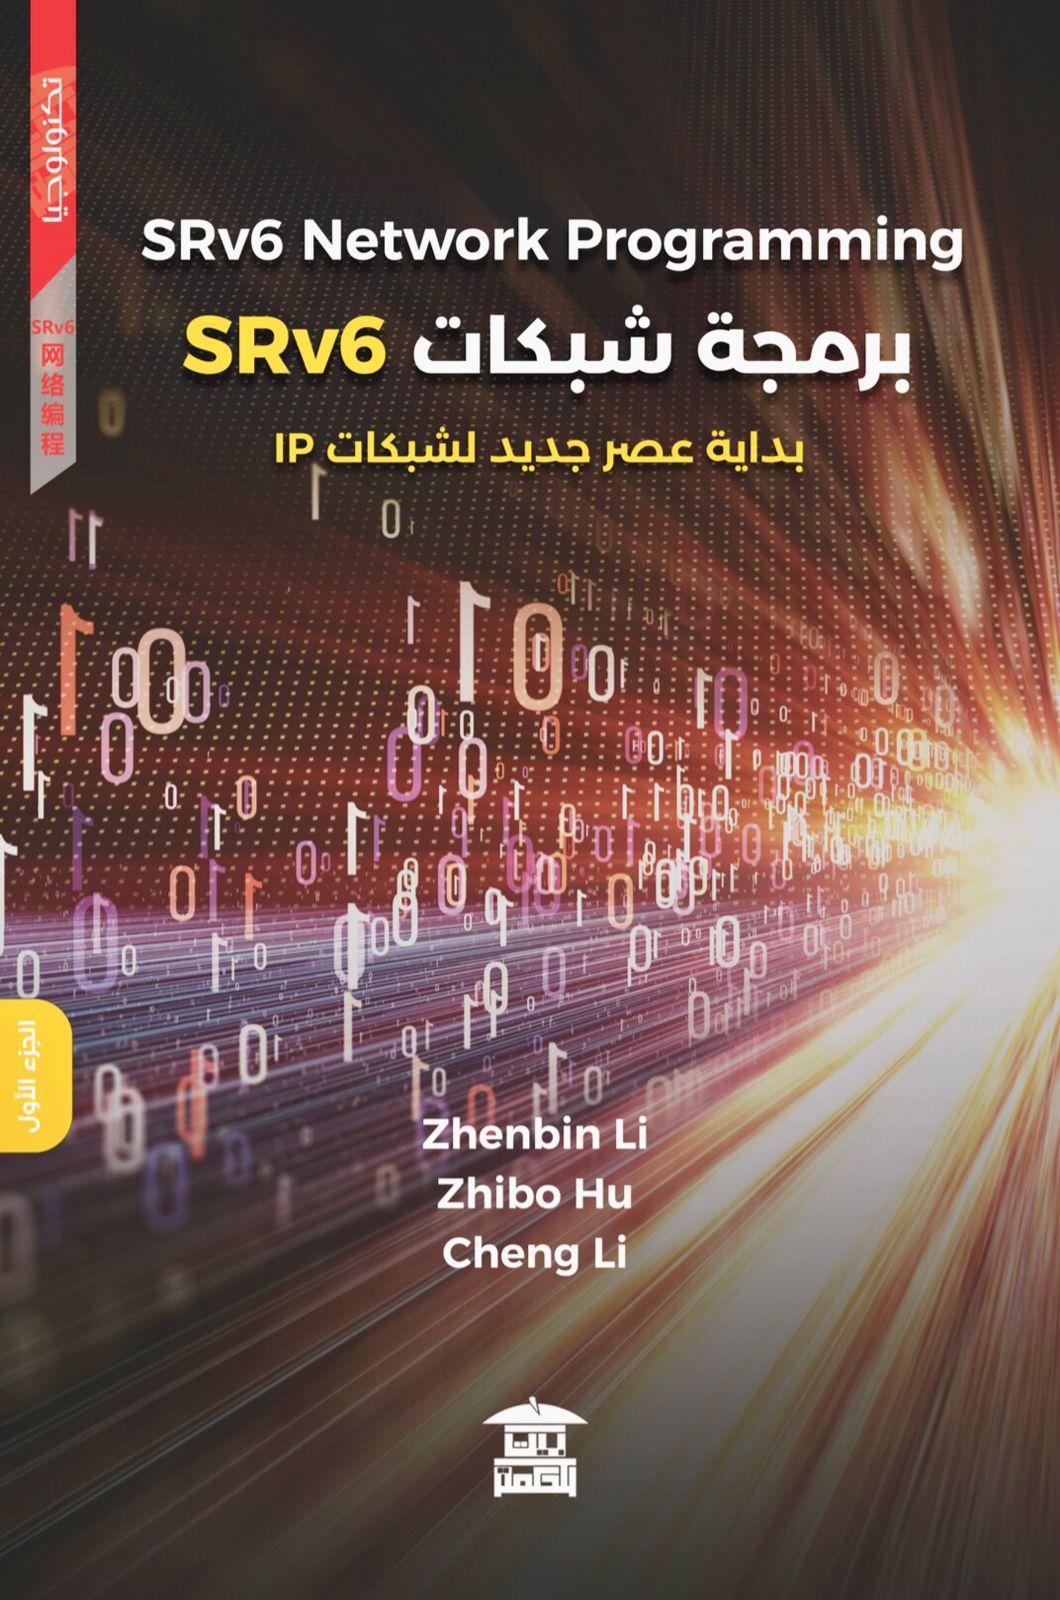 برمجة شبكات SRv6 بداية عصر جديد لشبكات IP (الجزئين)